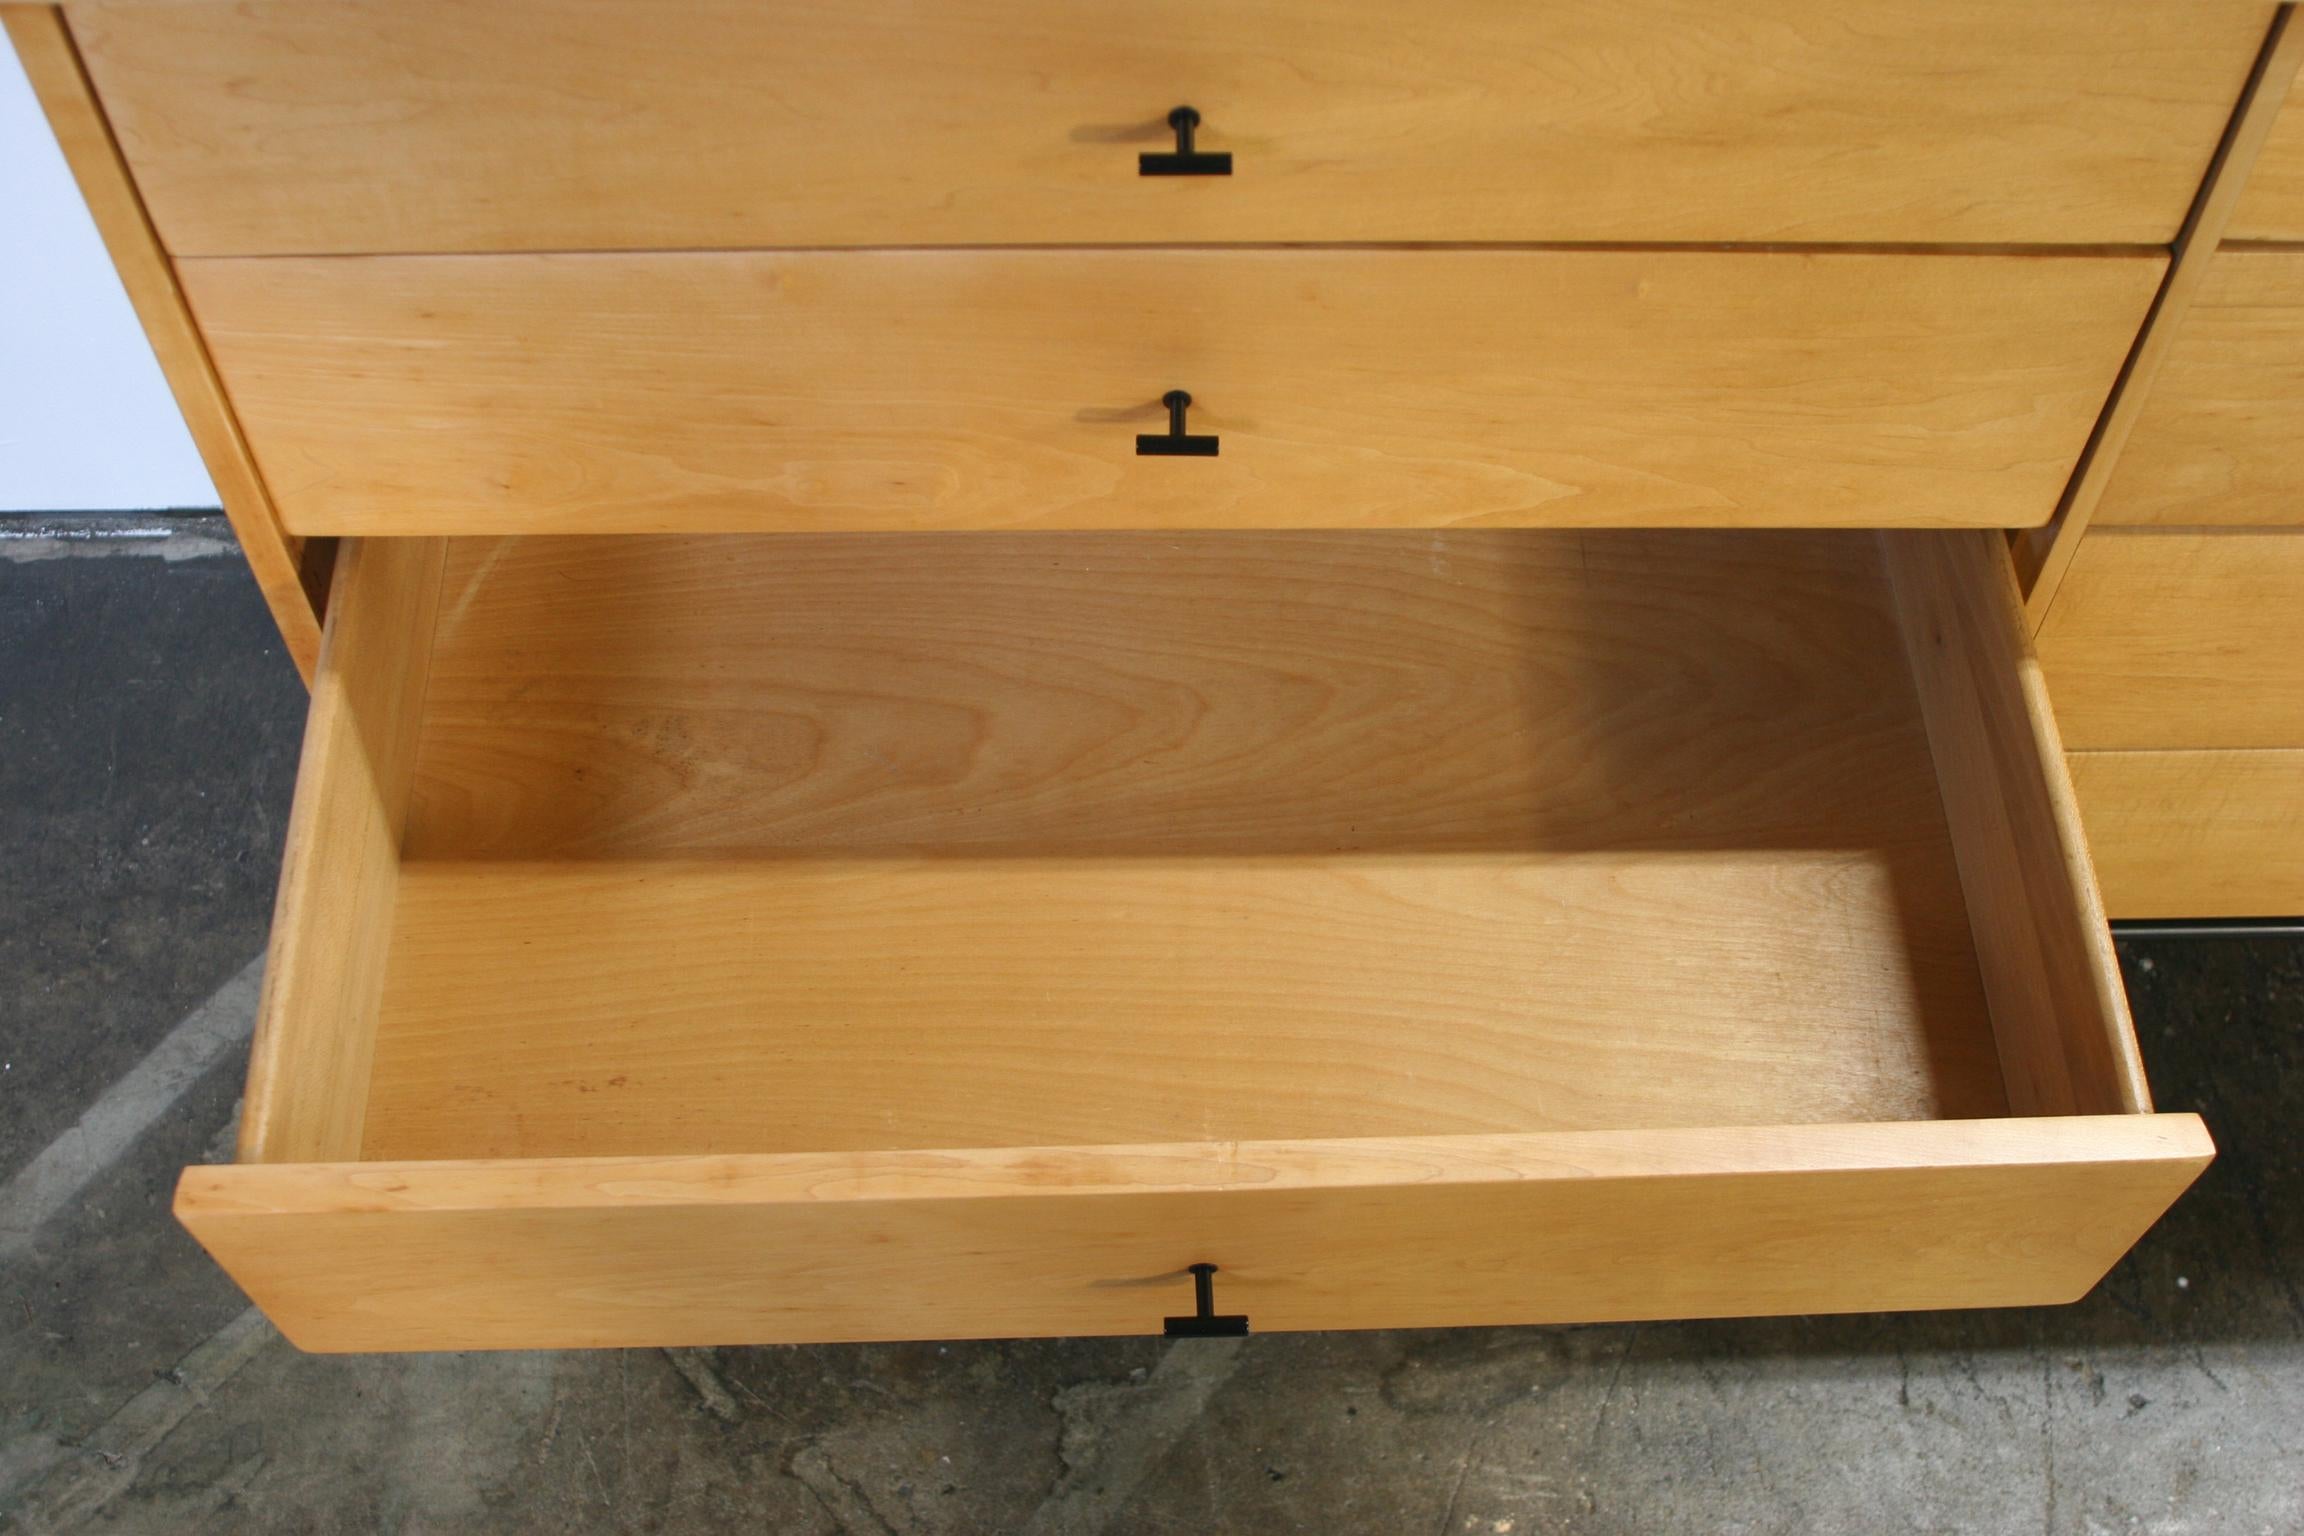 Woodwork Midcentury Paul McCobb 8-Drawer Dresser Credenza #1507 Blonde Maple T Pulls